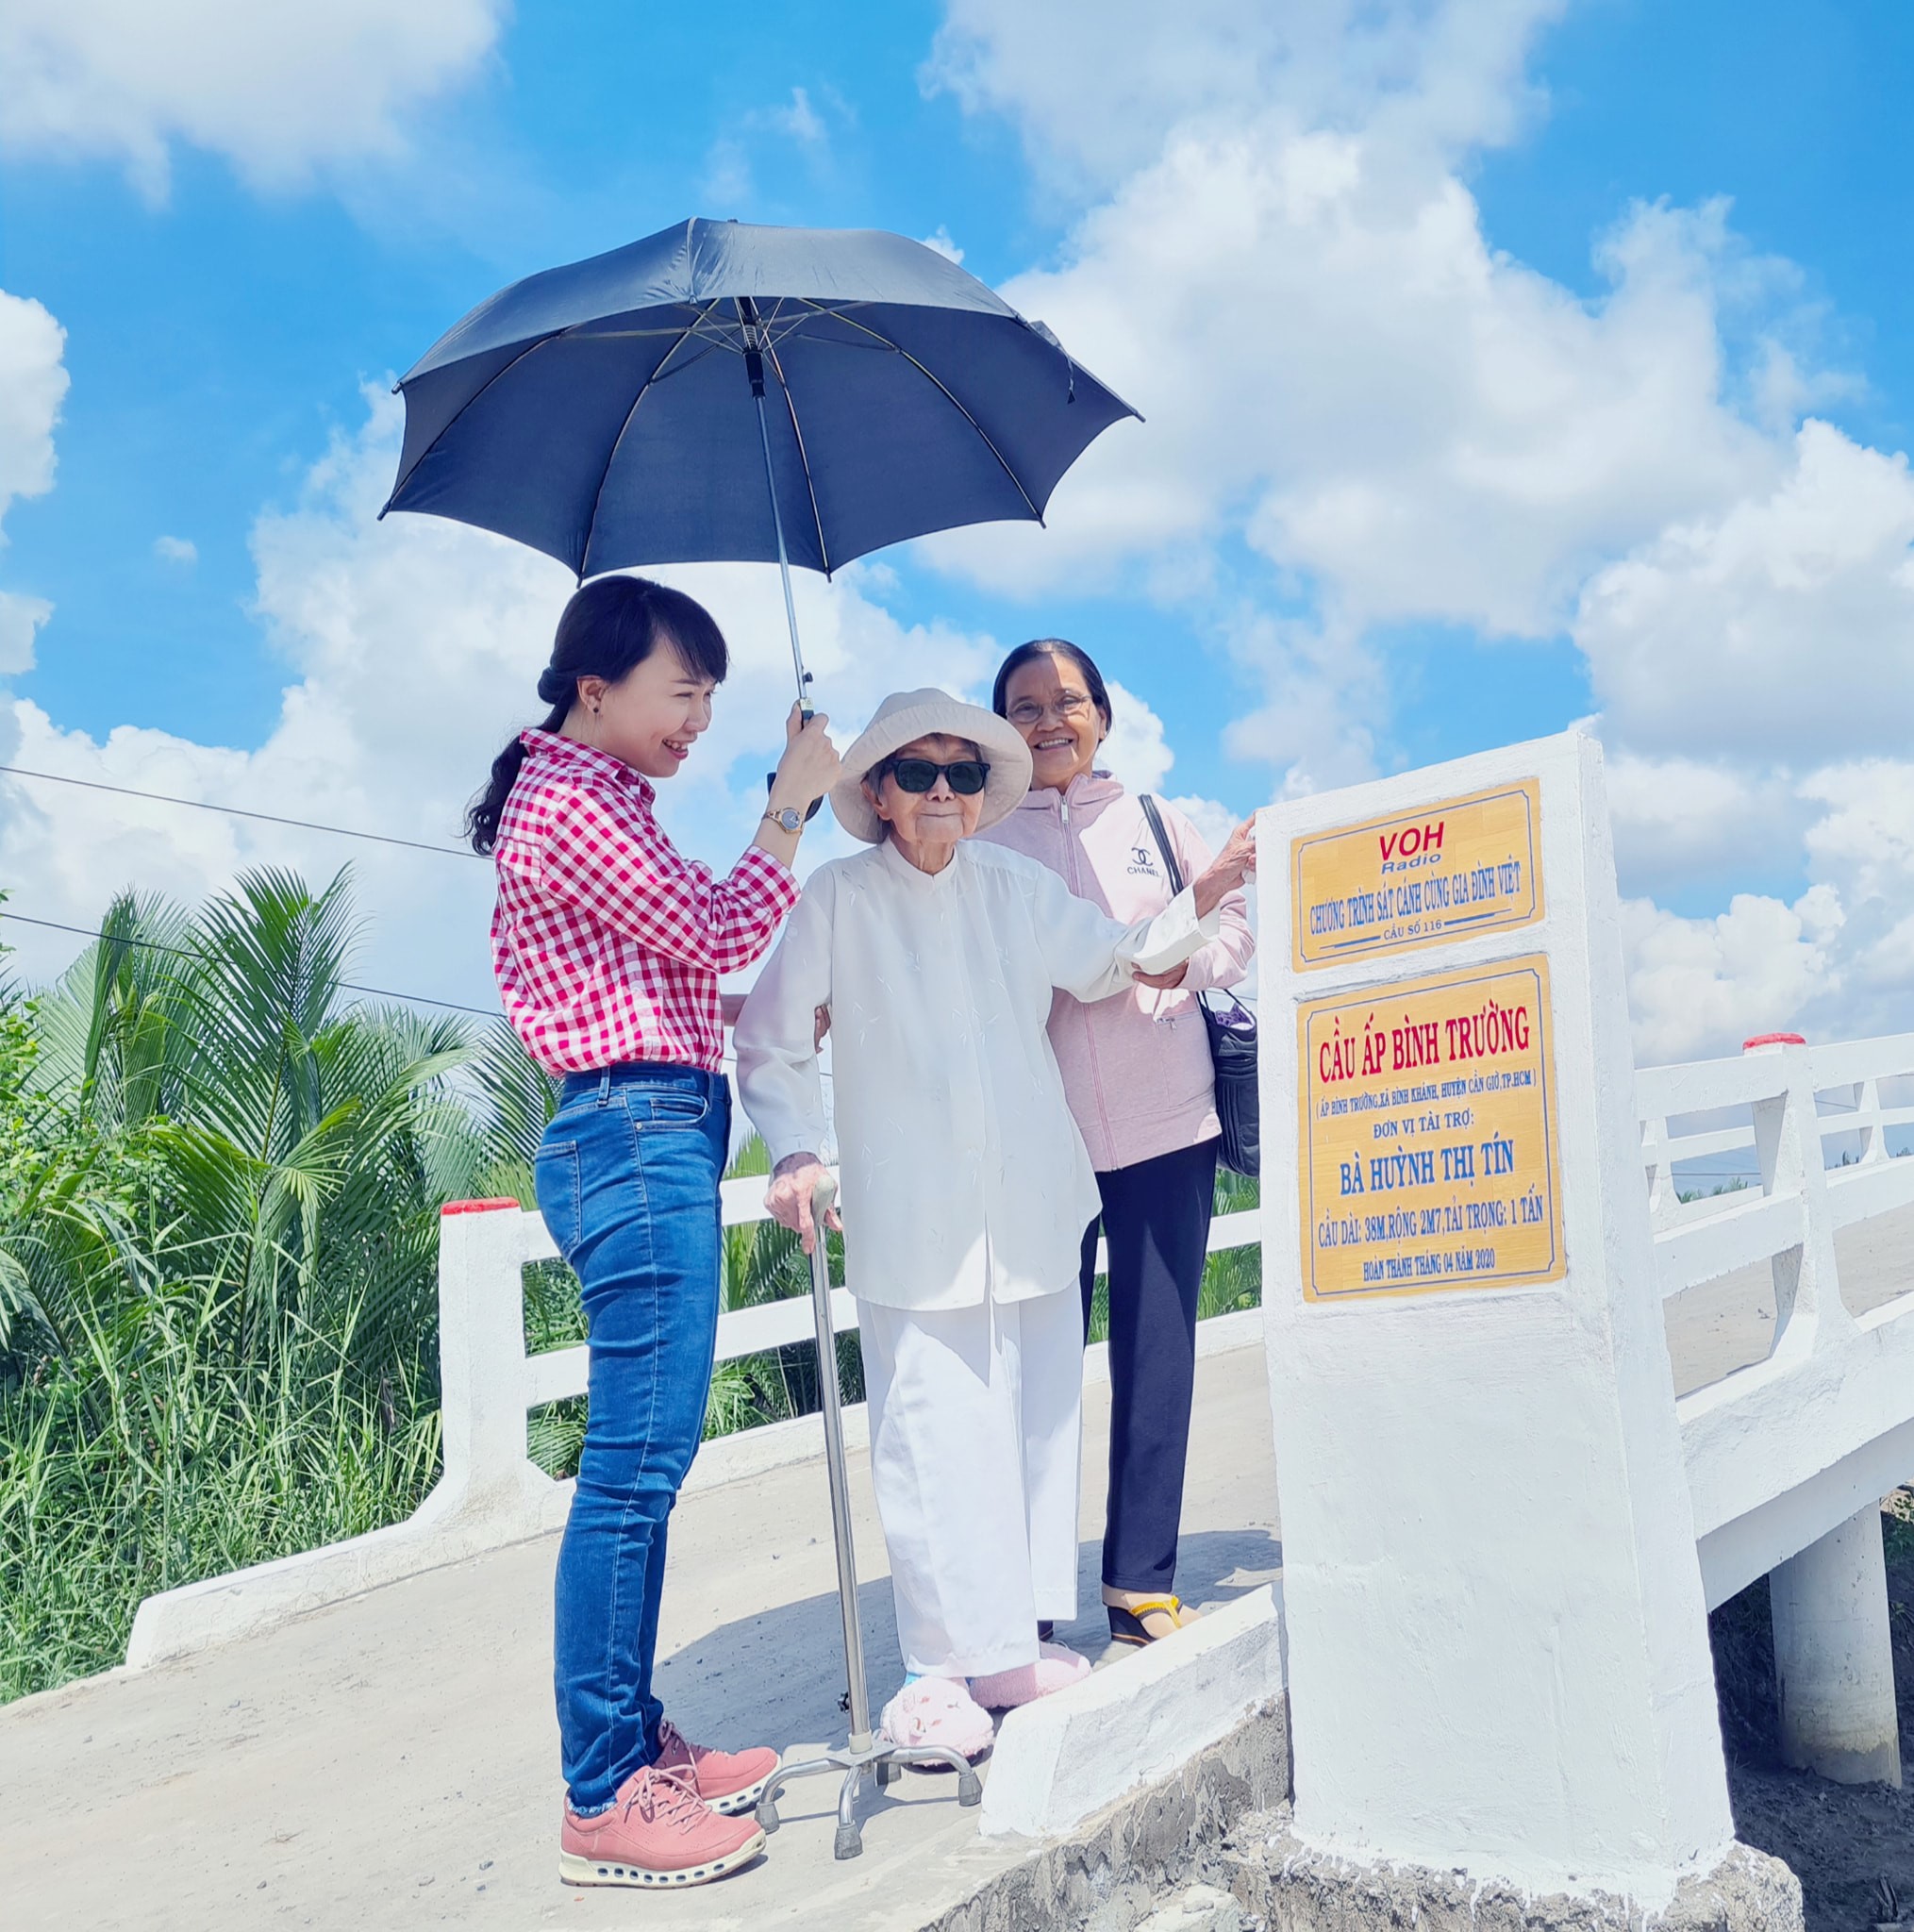 Vietnamese woman build bridges